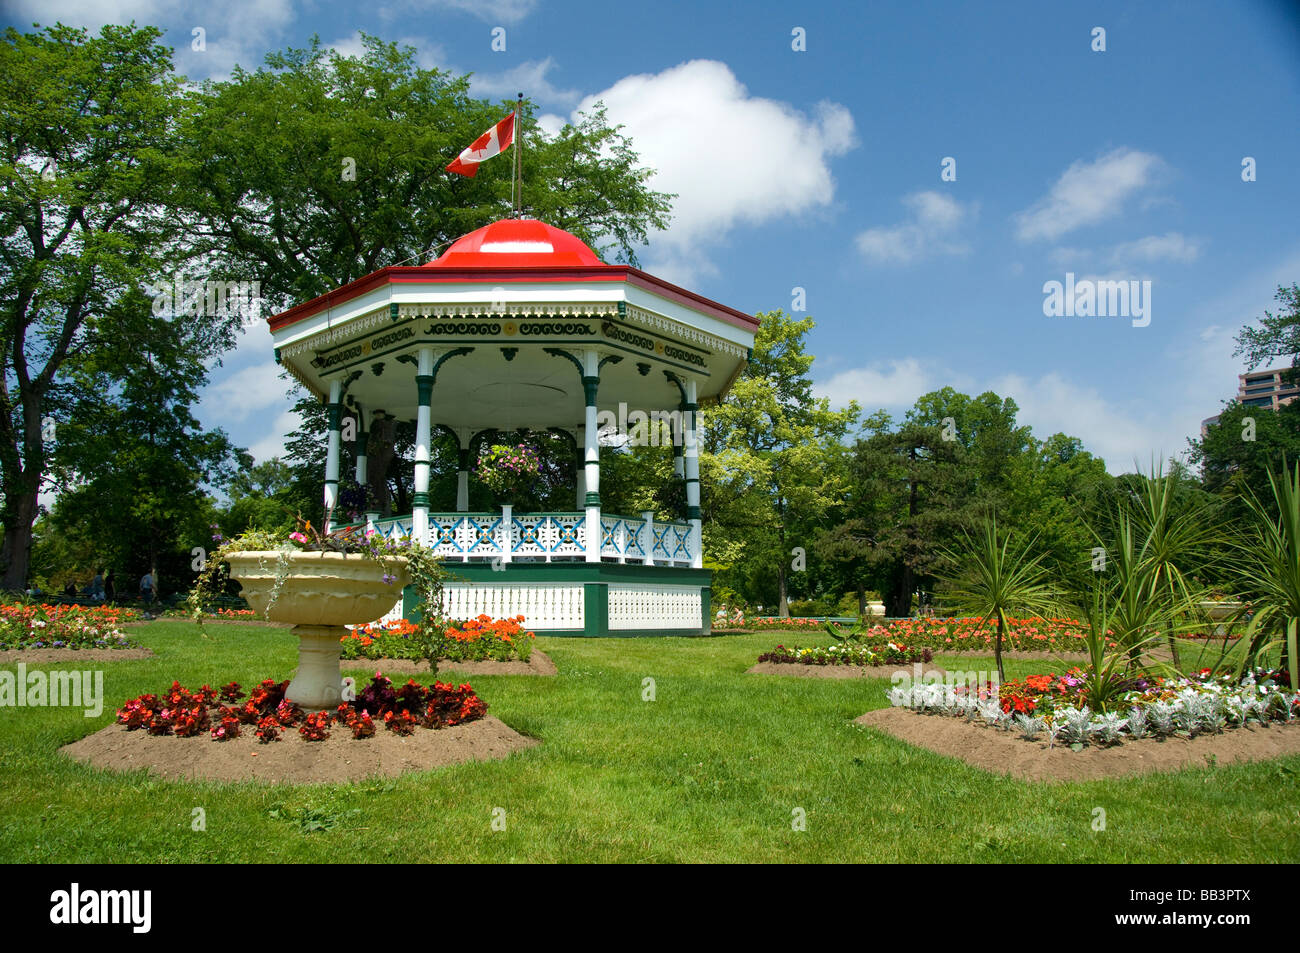 Canadá, Halifax, Nova Scotia, jardines públicos. Ciudad histórica victoriana jardín creado en 1836, gazebo tradicional. Foto de stock